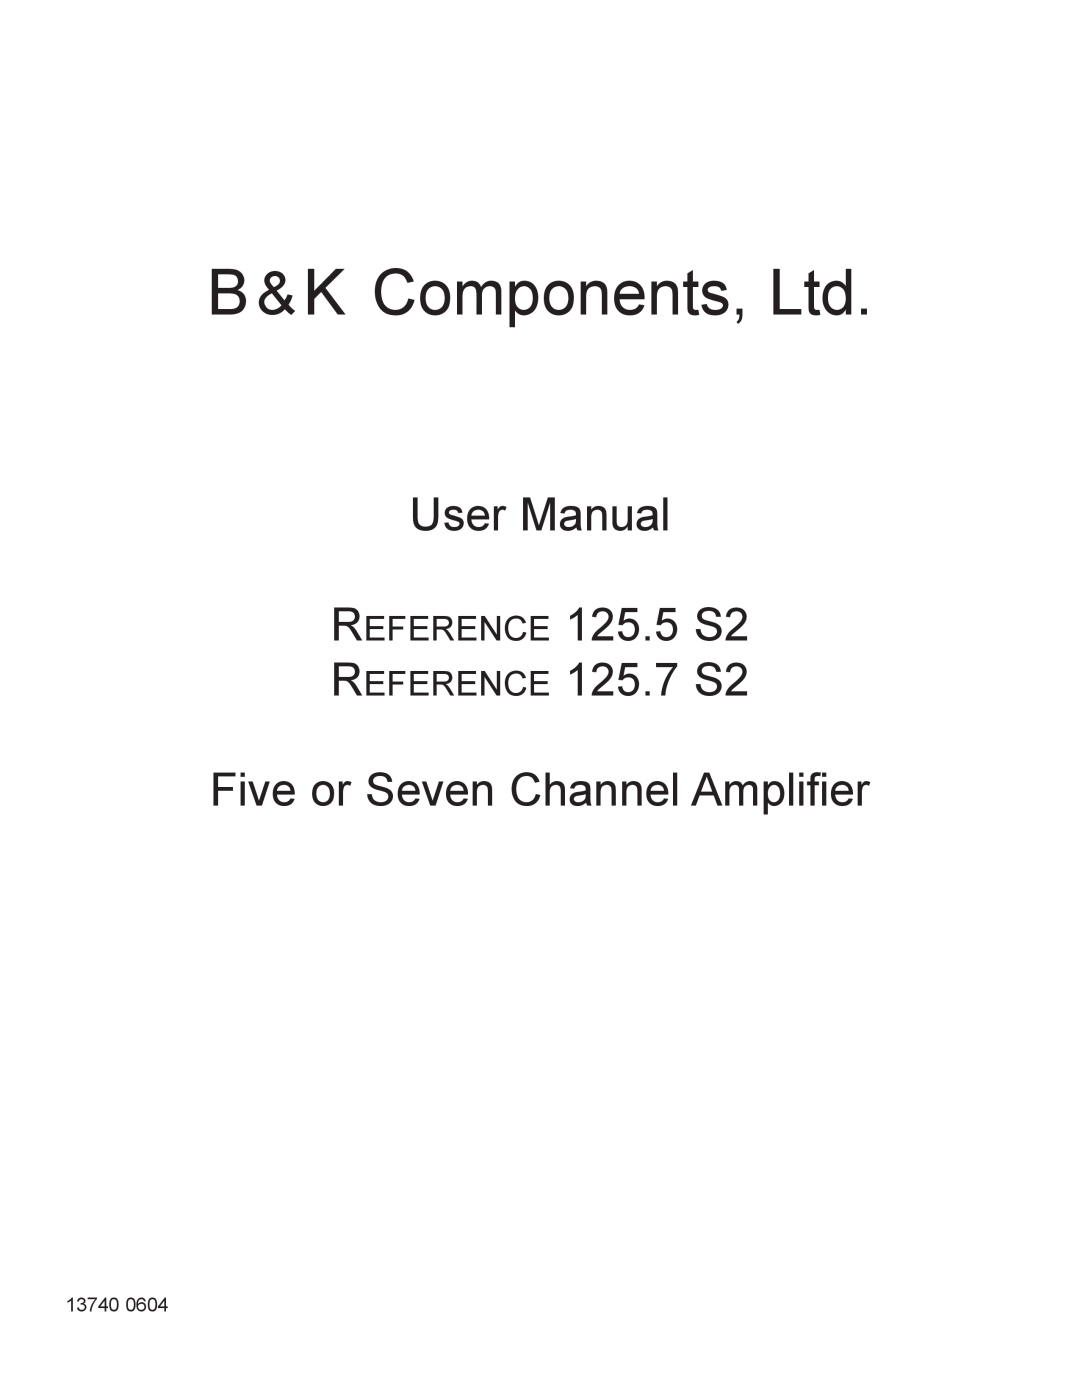 B&K 125.7 S2, 125.5 S2 user manual Five or Seven Channel Amplifier 